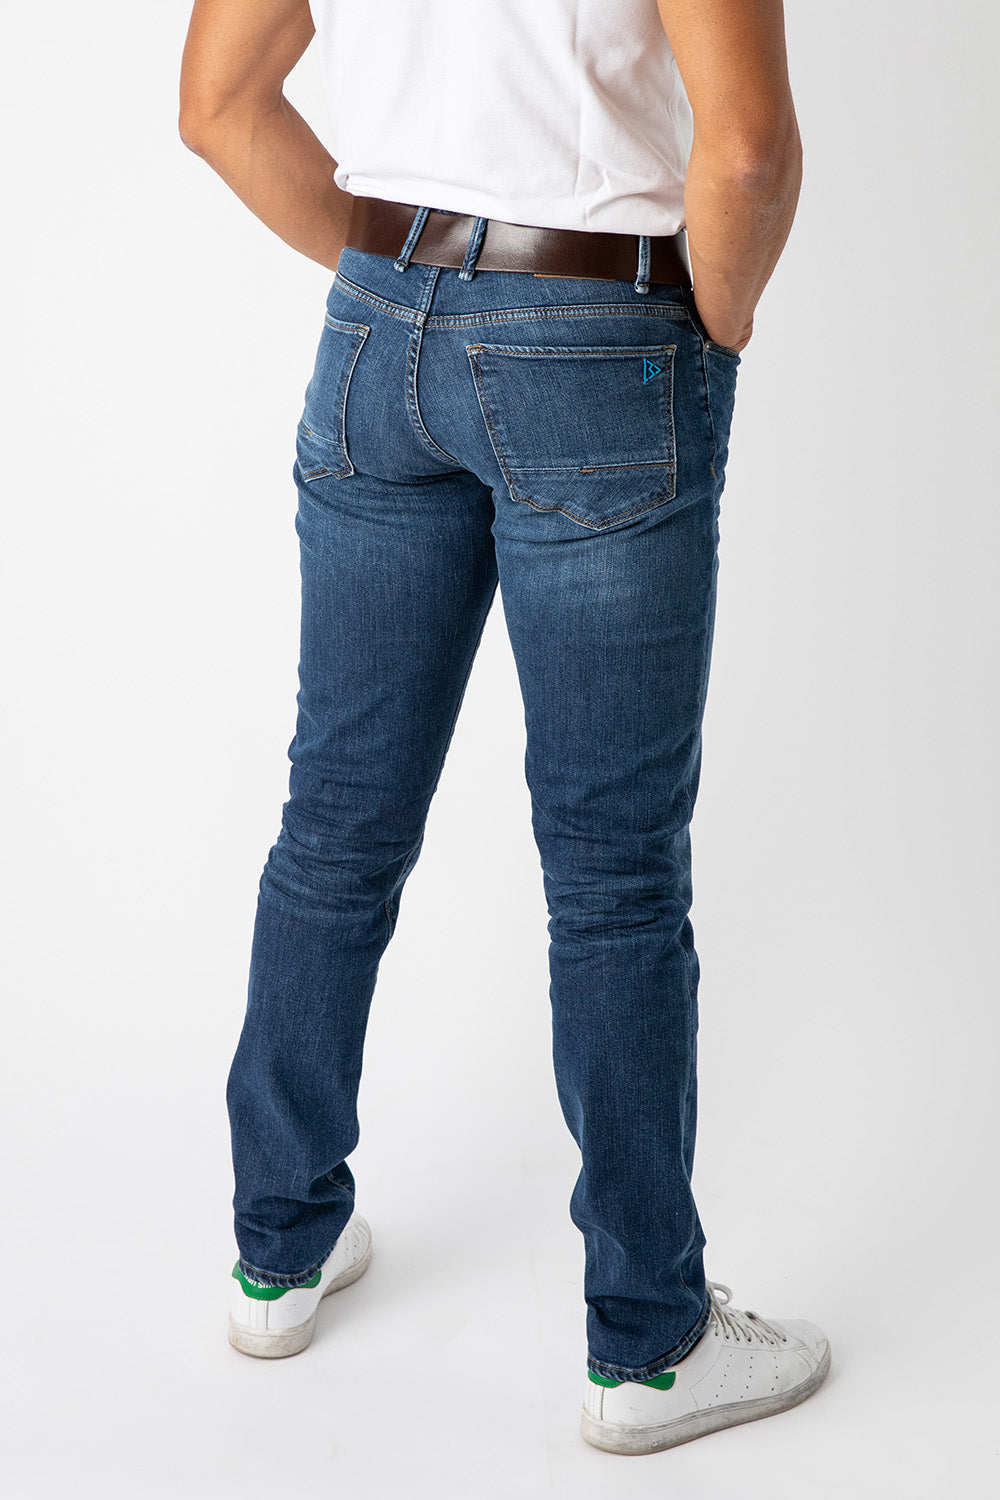 Habille Pantalons & Jeans pour Homme